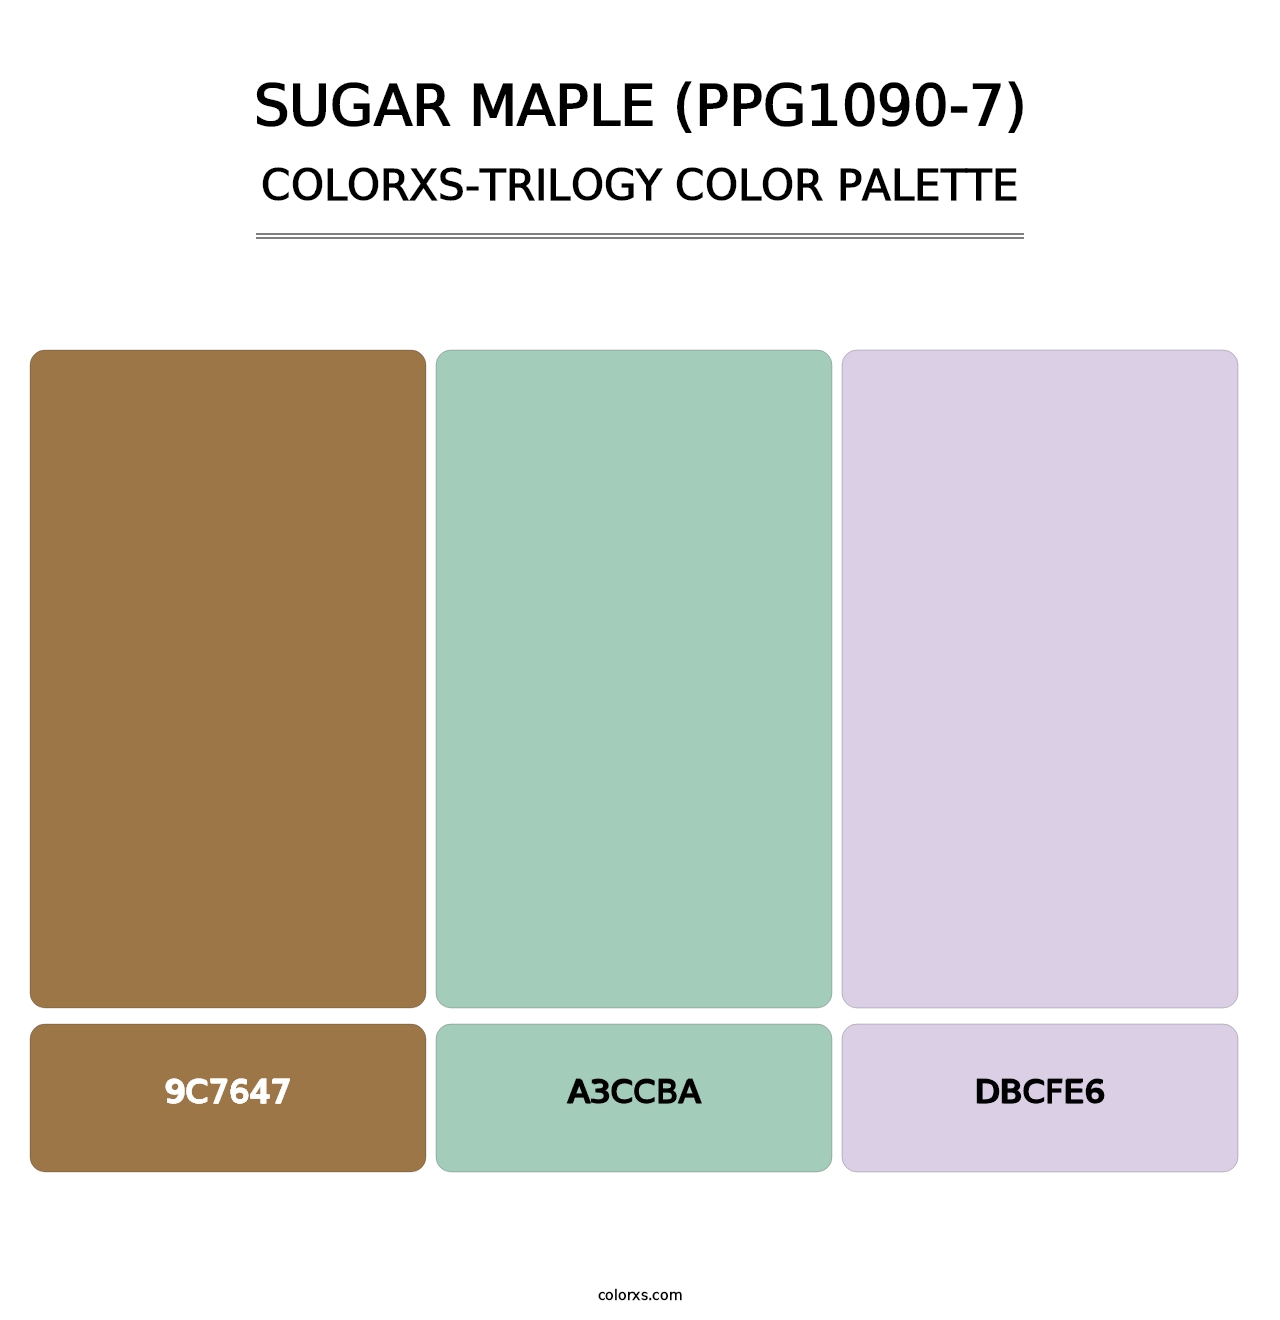 Sugar Maple (PPG1090-7) - Colorxs Trilogy Palette